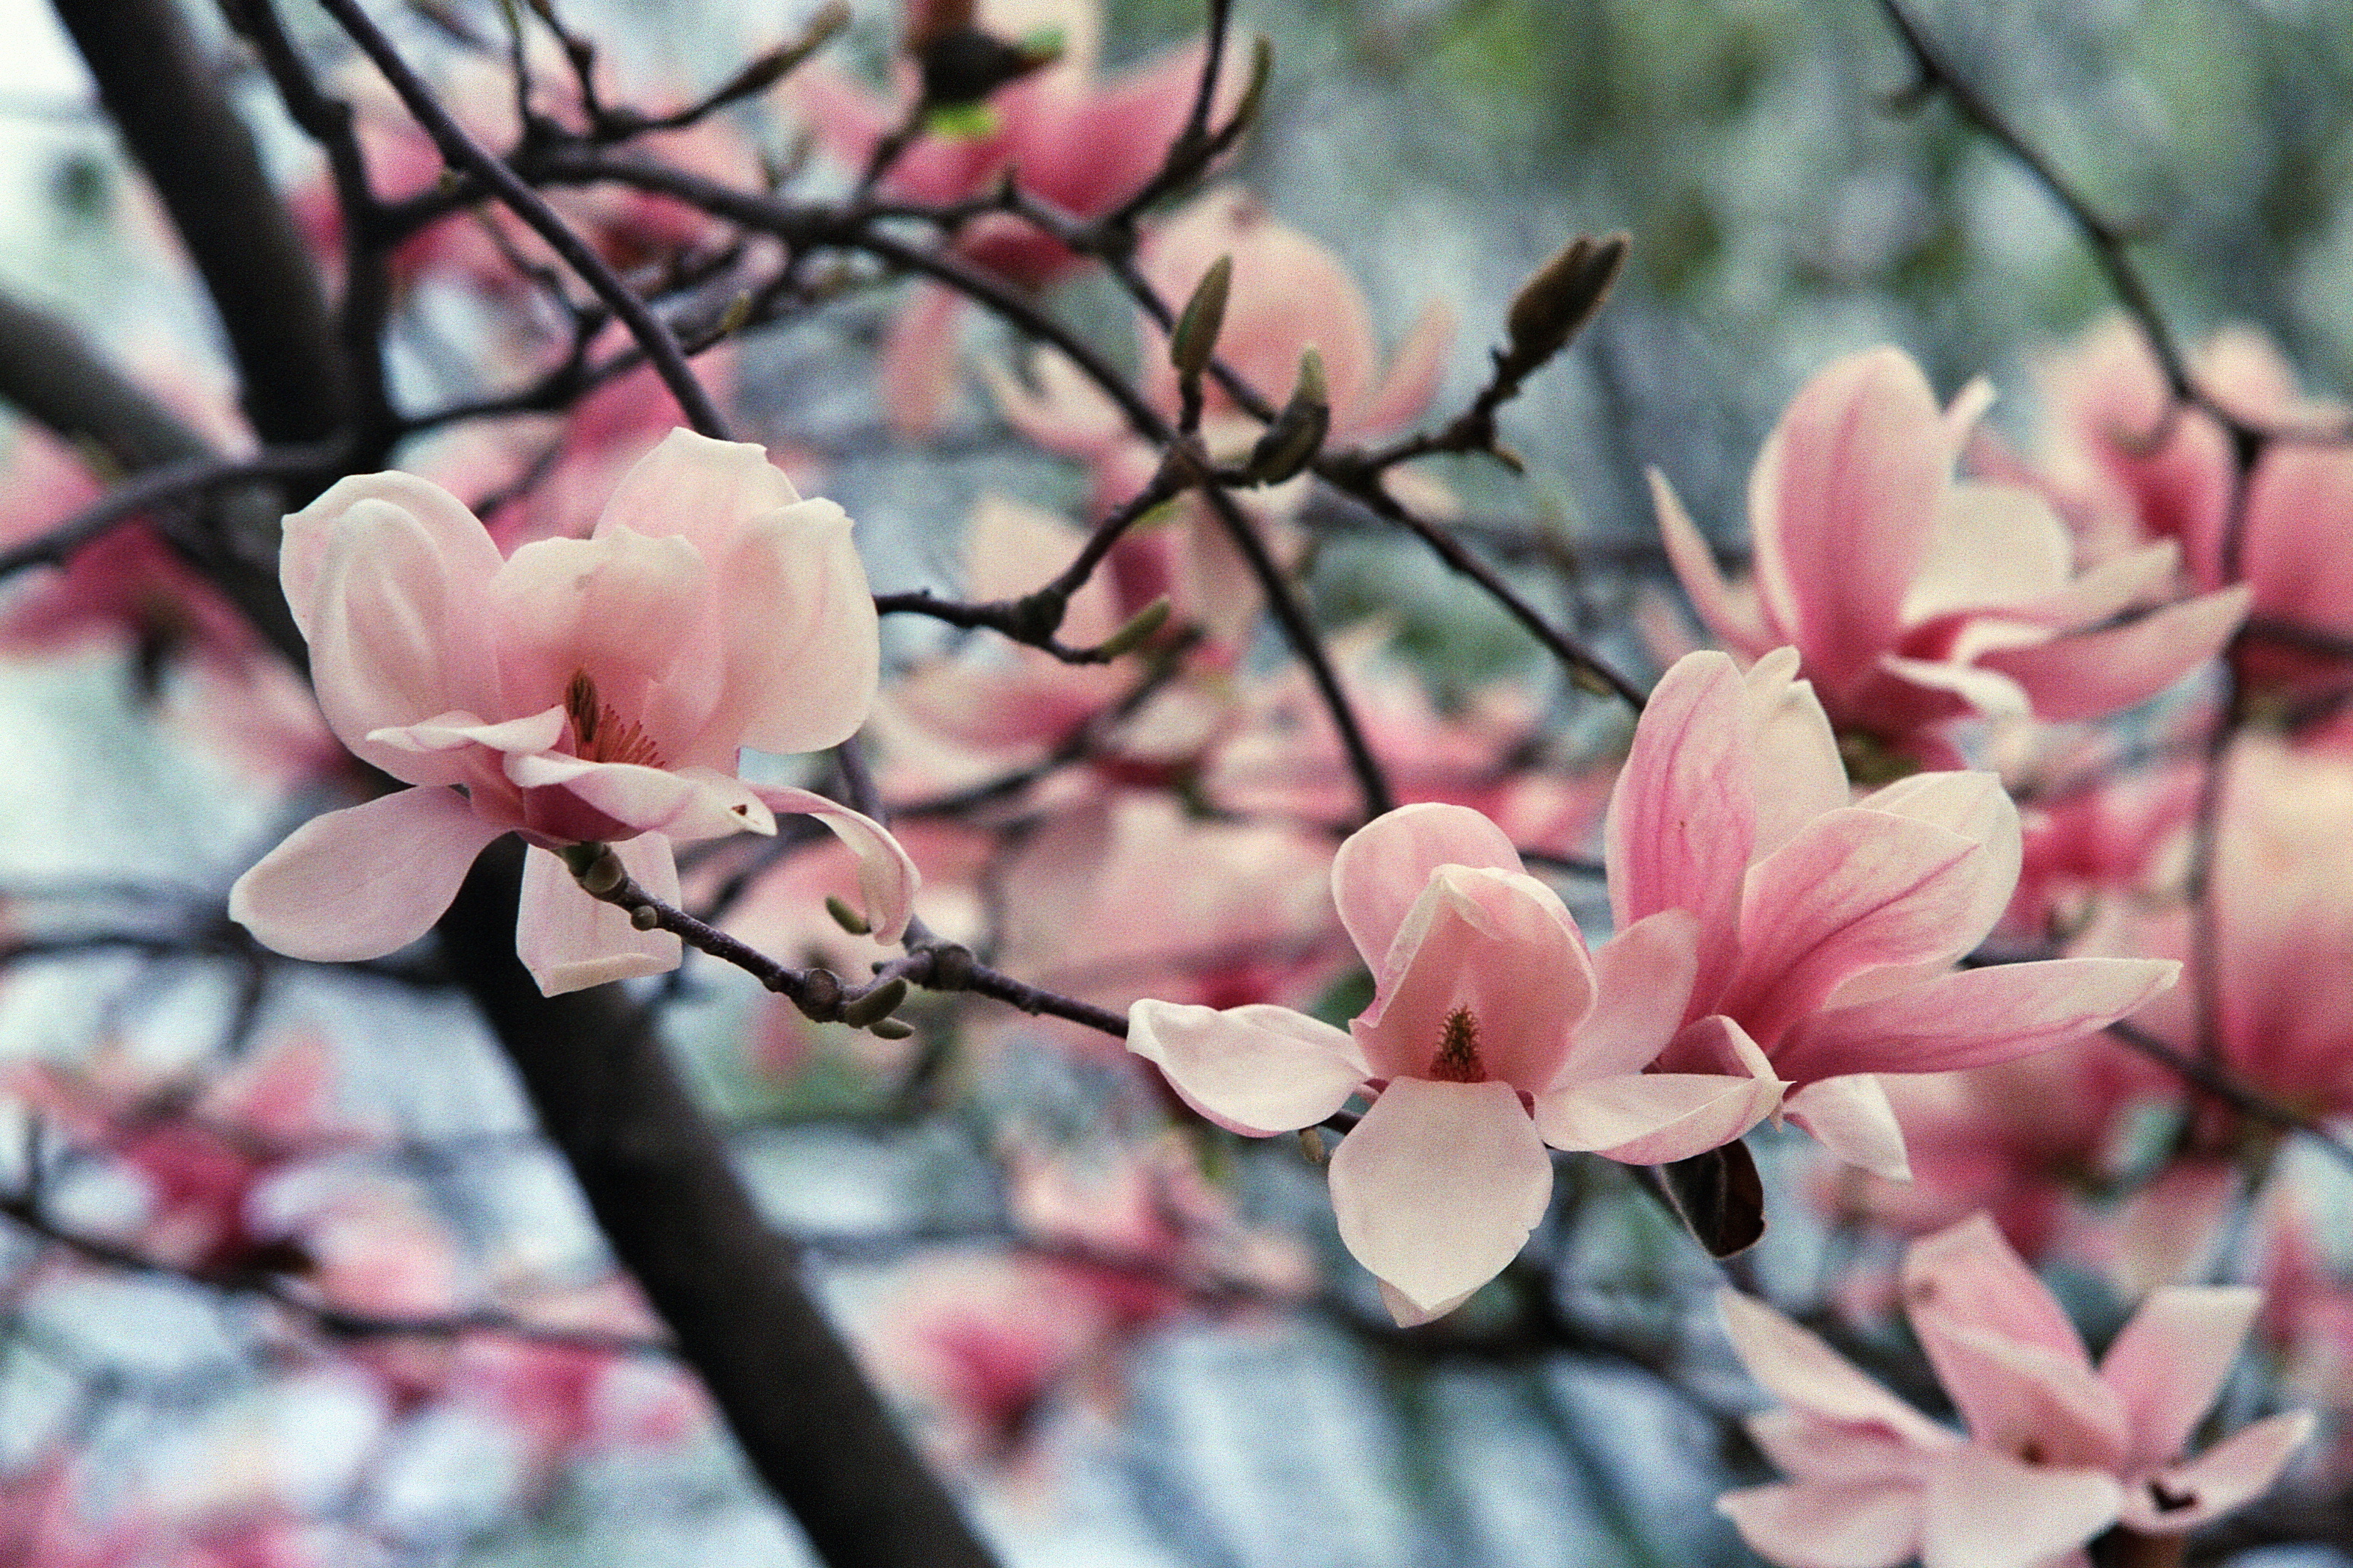 Magnolia blossoms, Floral delight, Nature's gift, Beautiful petals, 3200x2140 HD Desktop